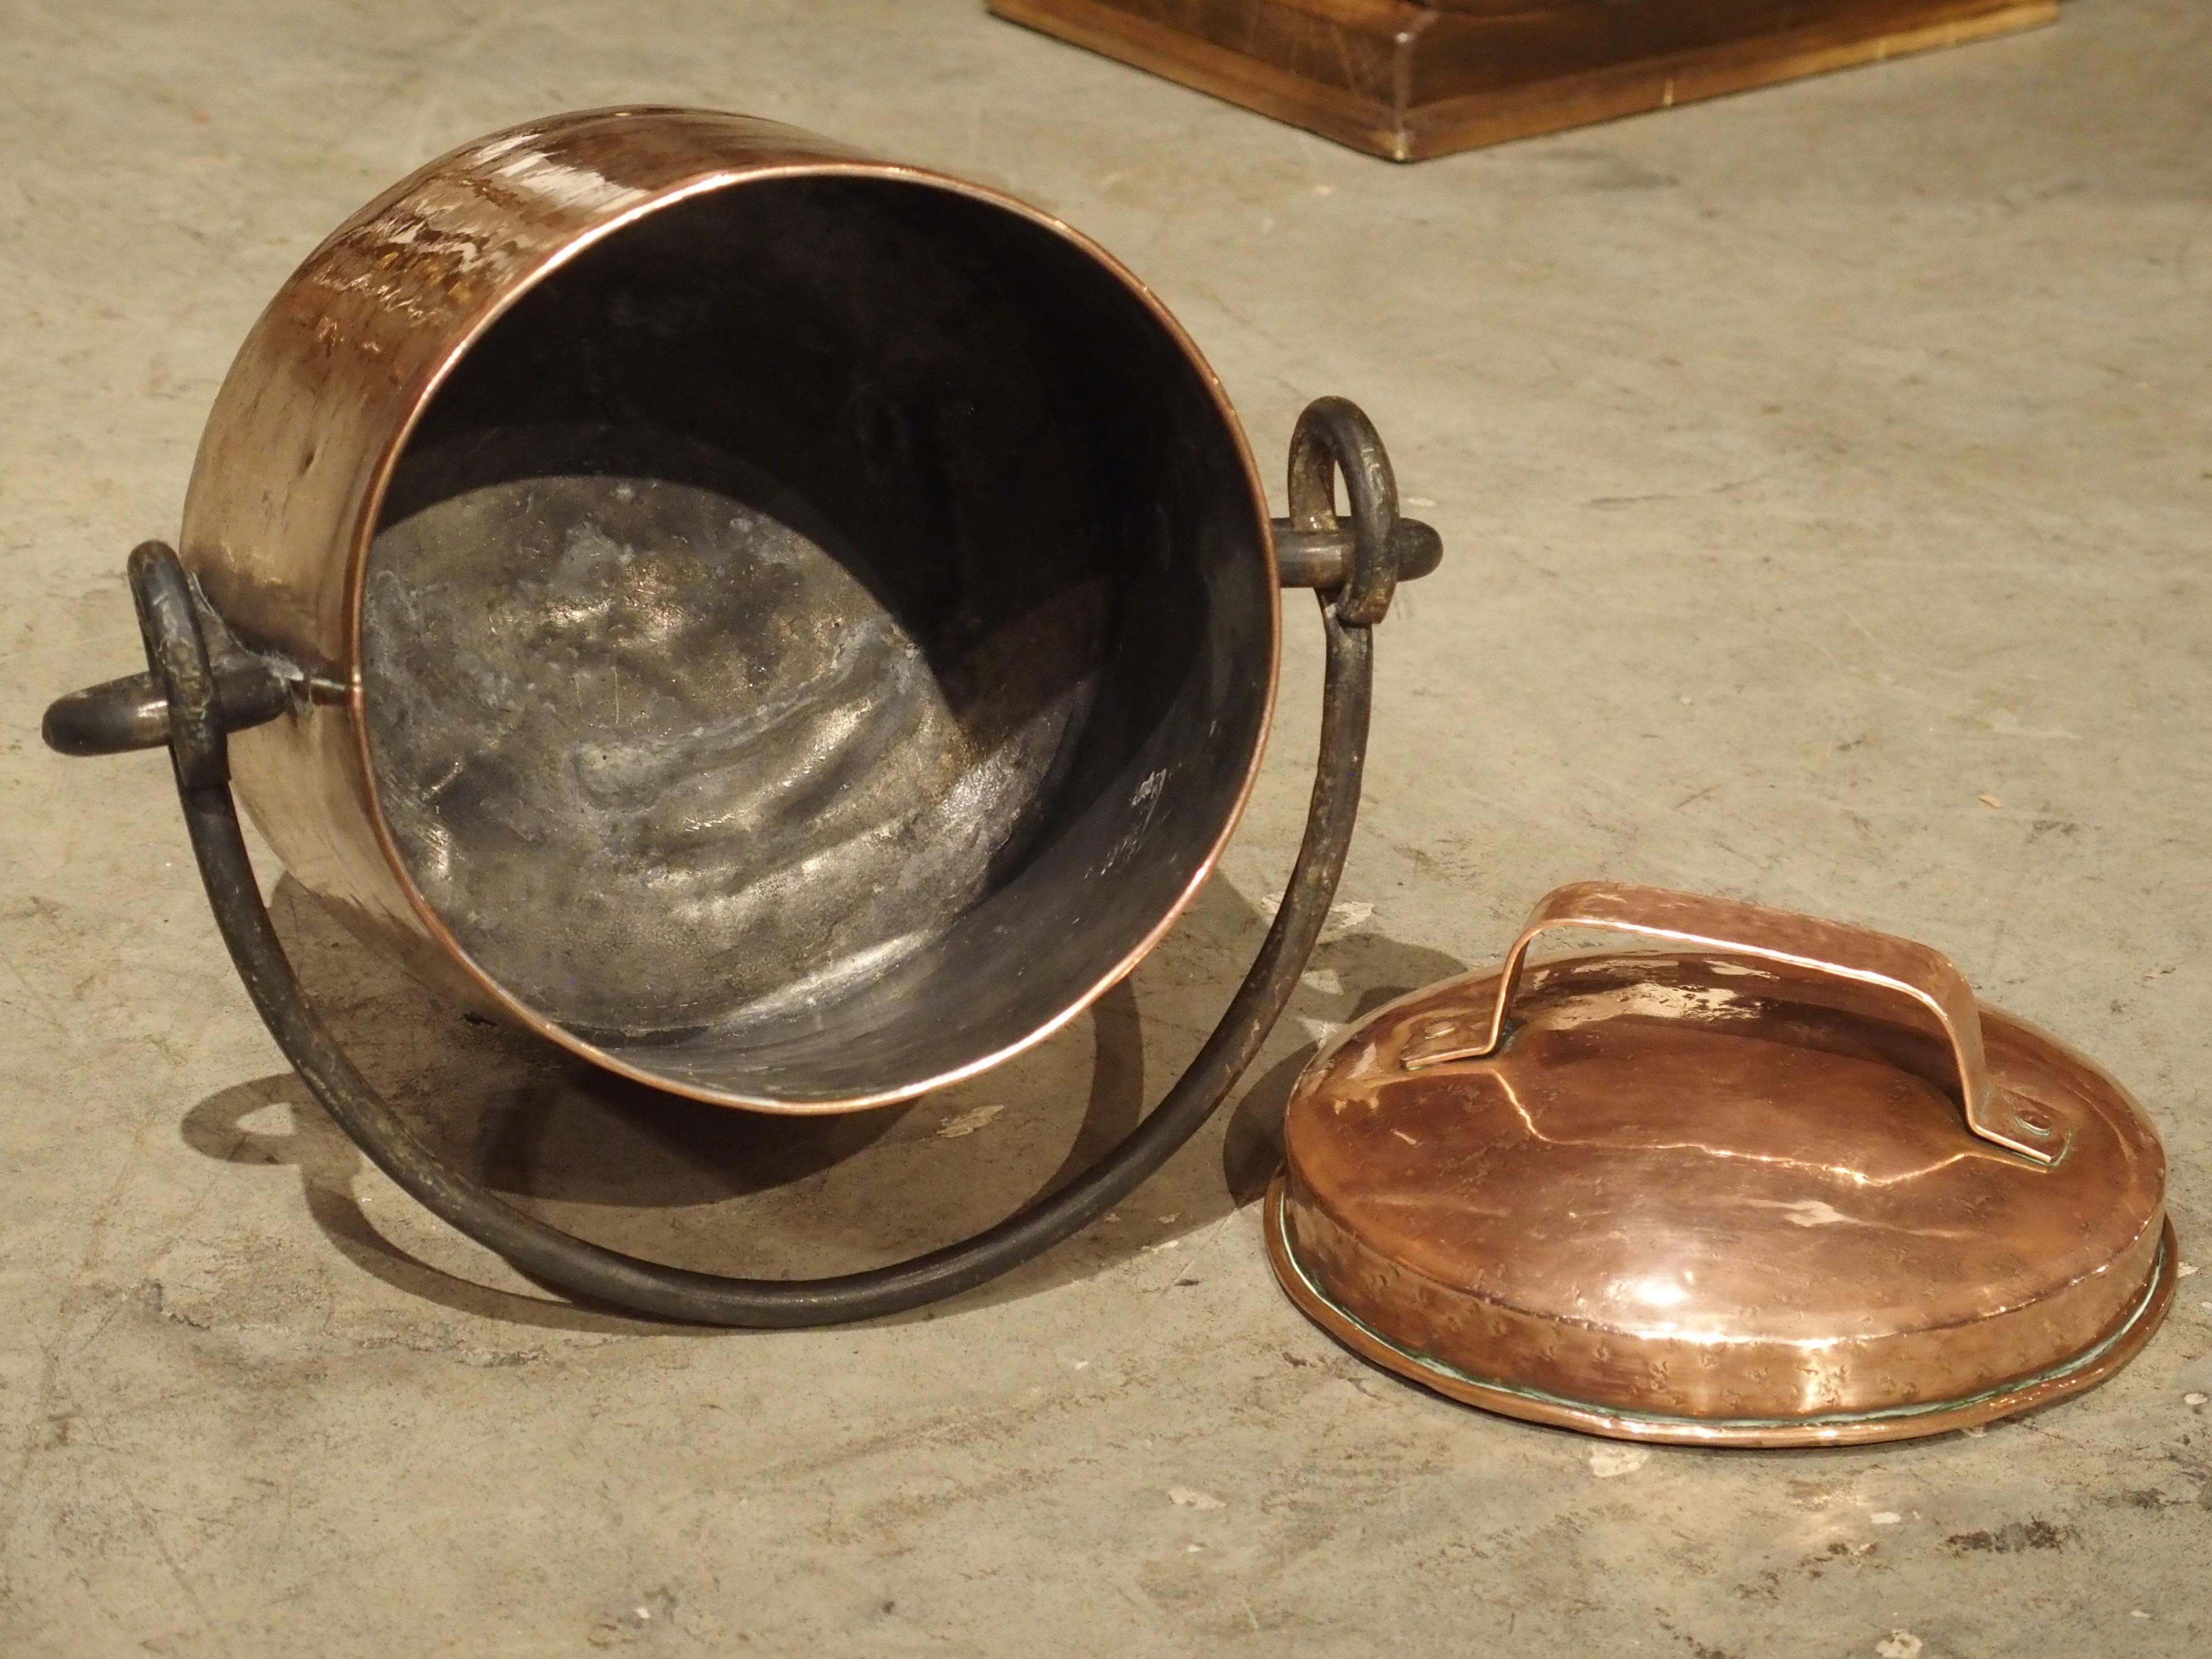 Ce chaudron ancien en cuivre avec une poignée en fer forgé provient de la France du 18e siècle. Un chaudron est un récipient circulaire profond:: généralement muni d'une poignée:: qui était utilisé pour cuisiner en France et dans d'autres pays